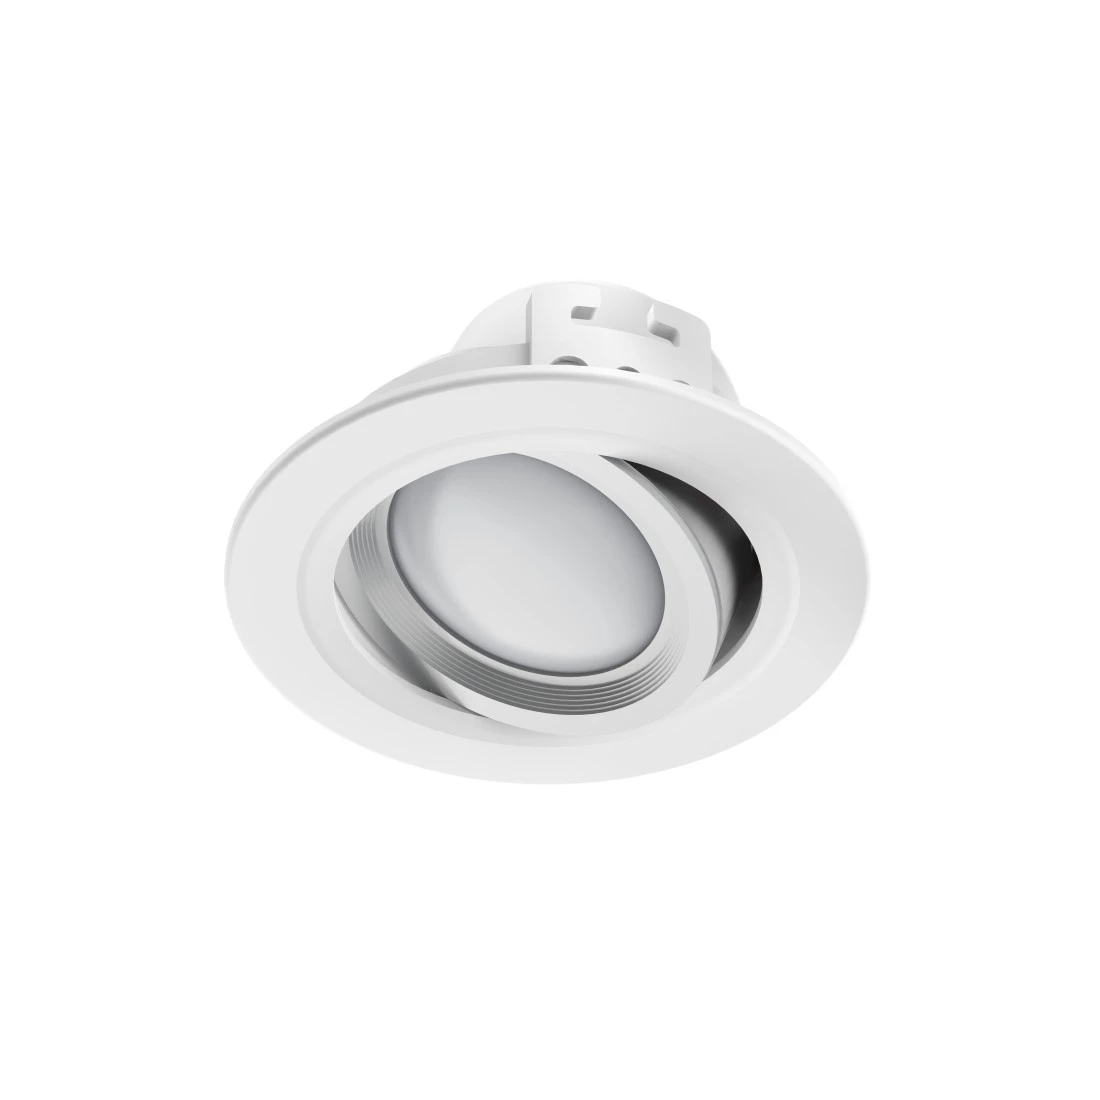 WLAN LED-Einbauspot, 5W, per Sprache/App steuern, verstellbar, Weiß | Hama | Alle Lampen